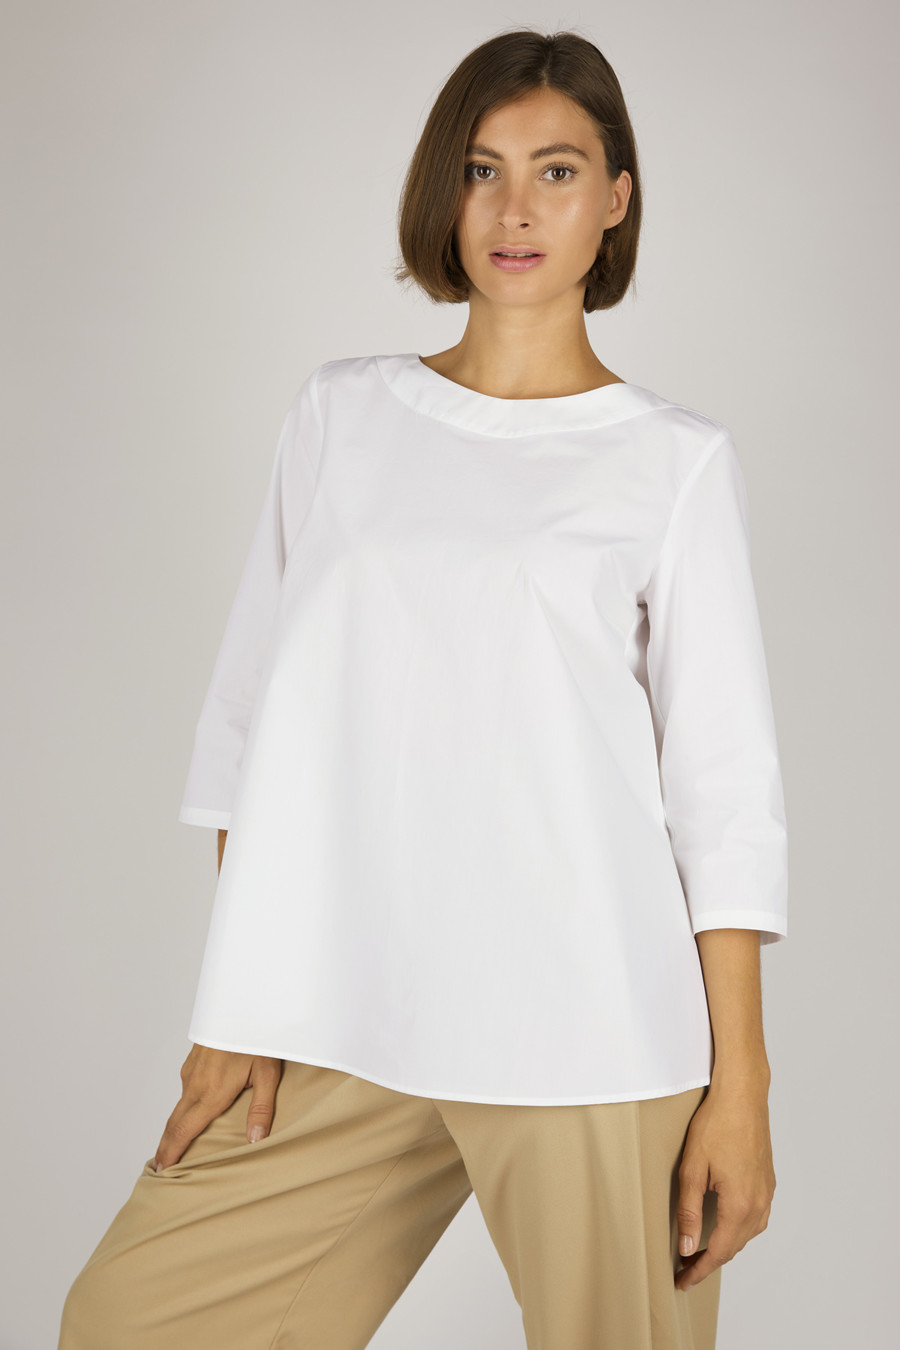 ALISON – Weites Shirt aus Biobaumwolle – Farbe: White